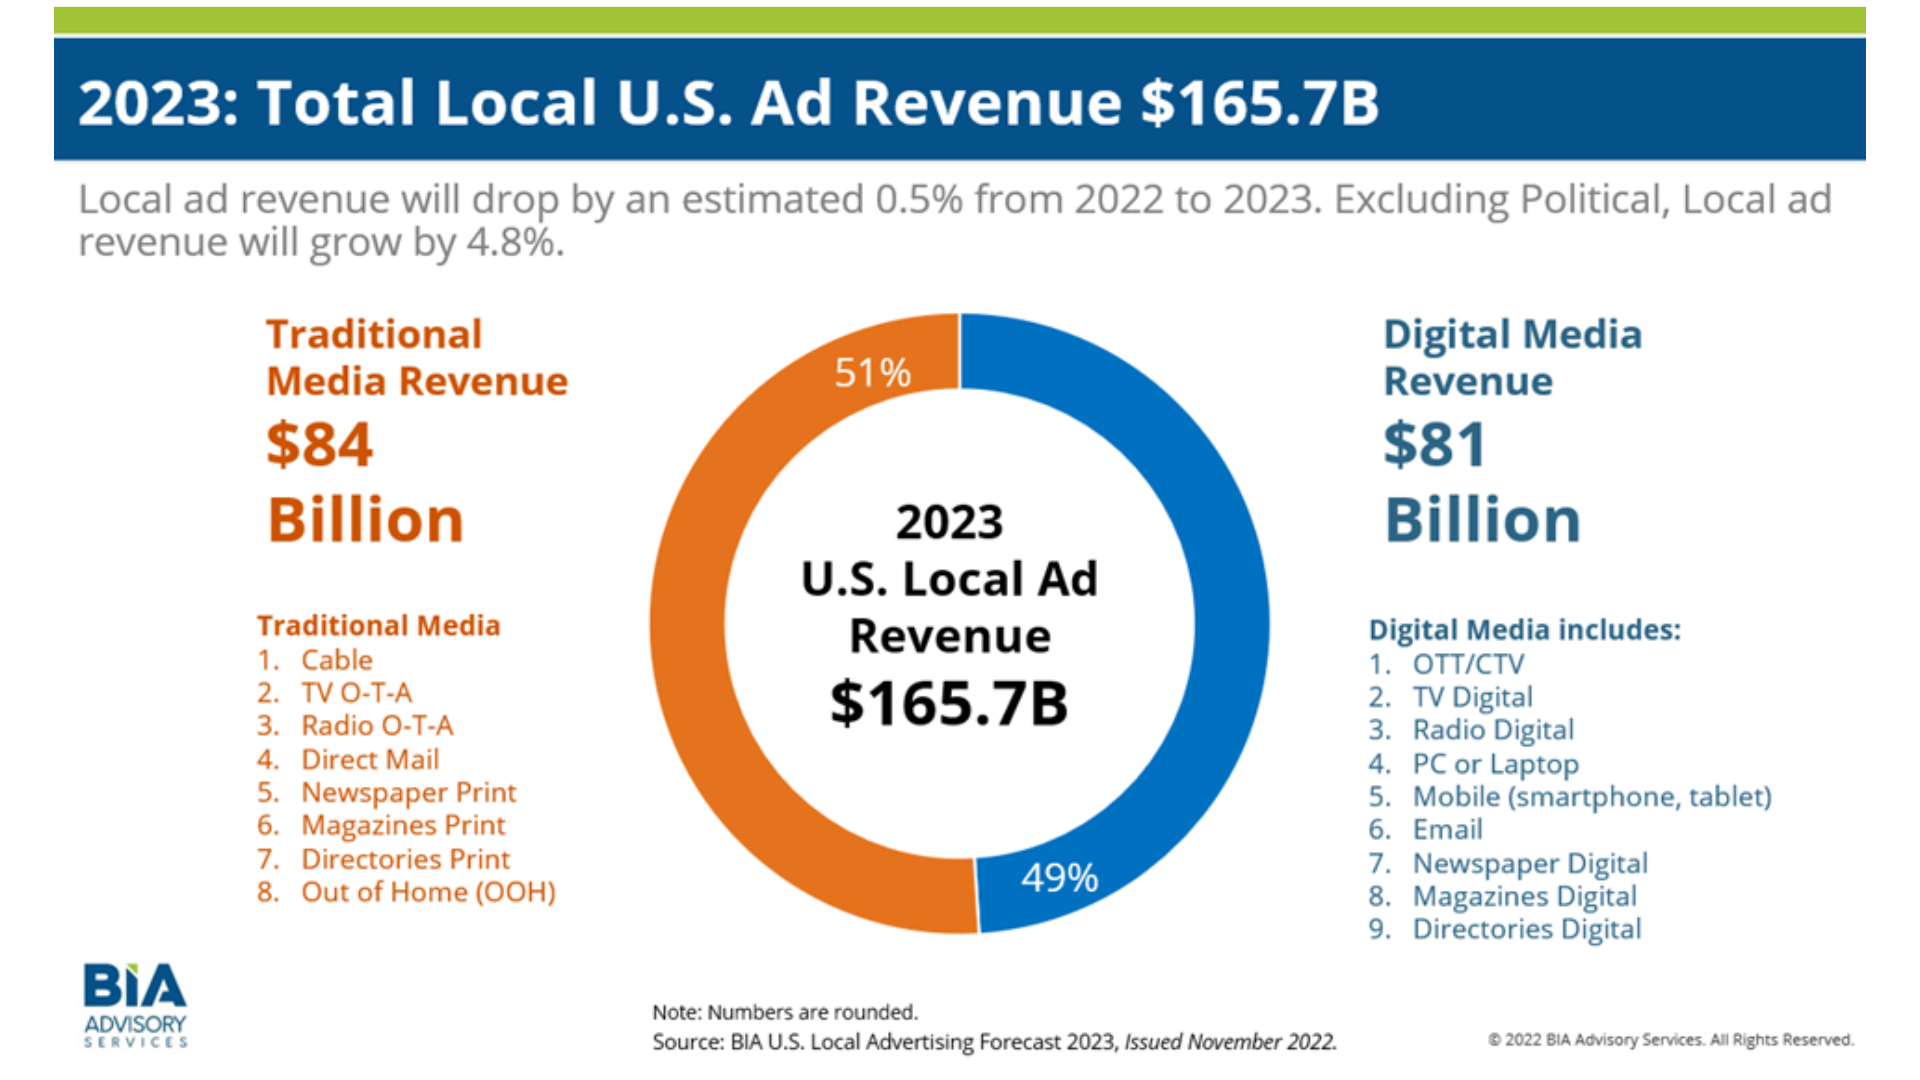 BIA 2023 Total Local U.S. Ad Revenue